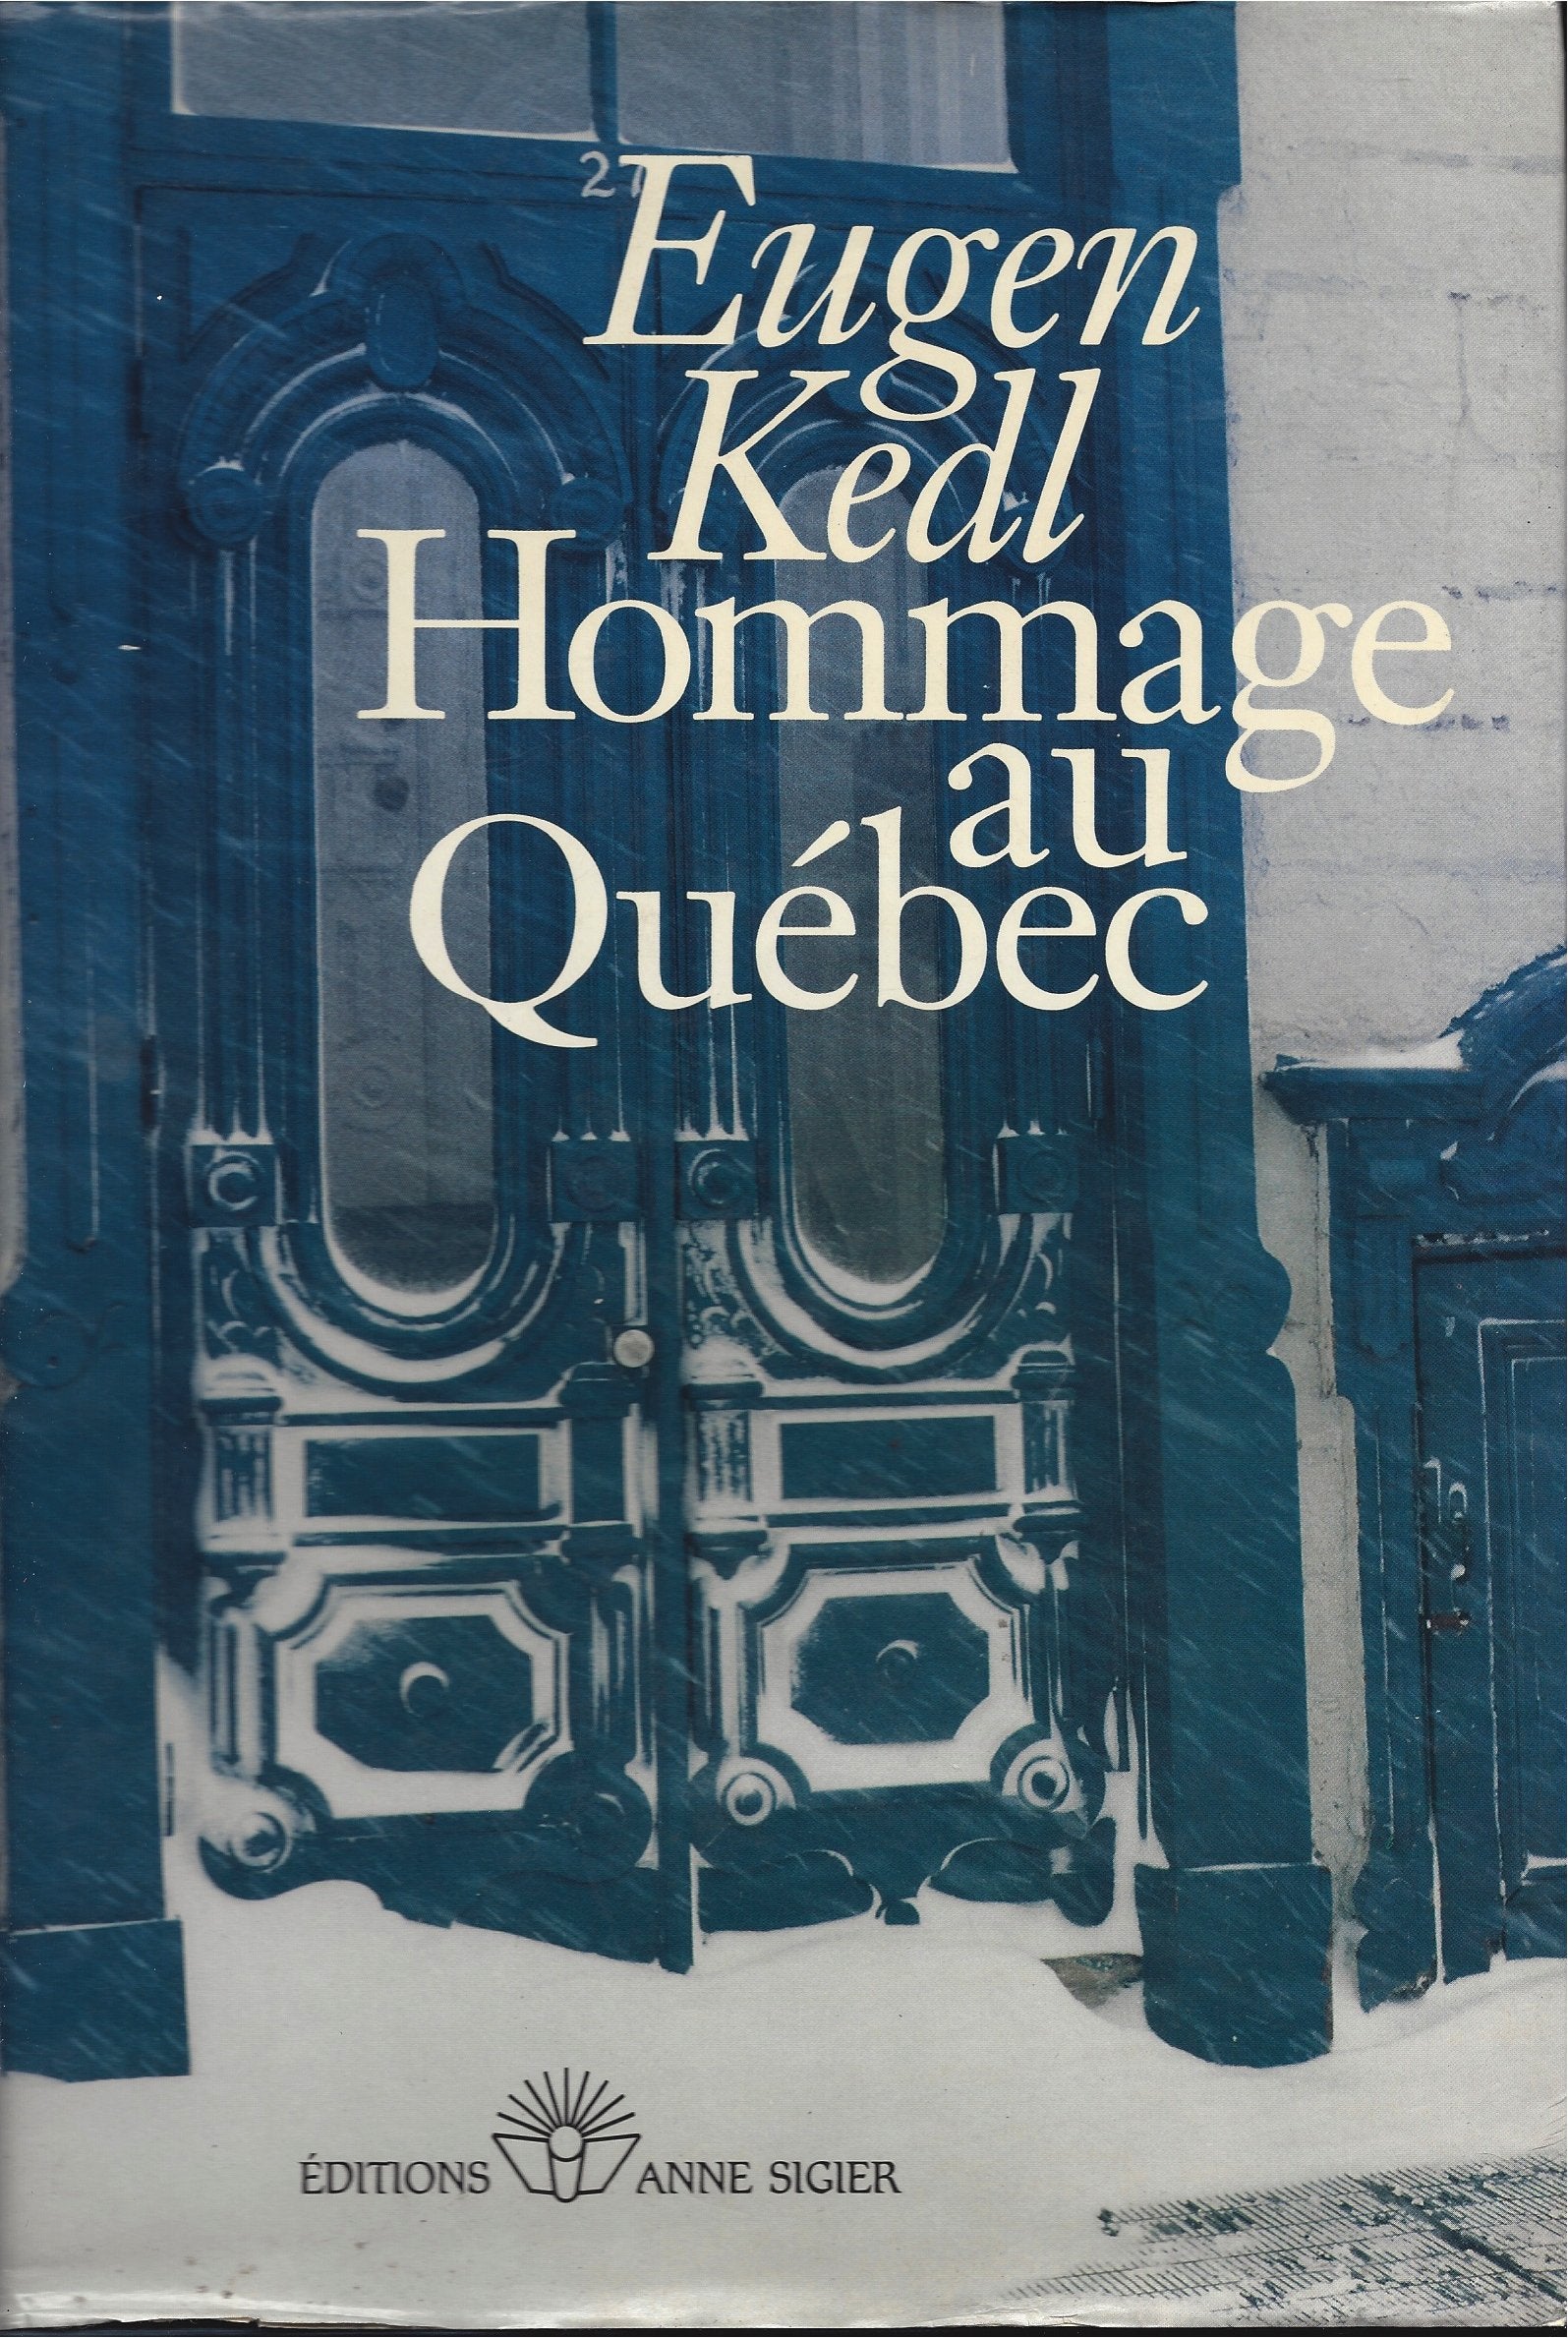 Hommage au Québec - Eugen Kedl